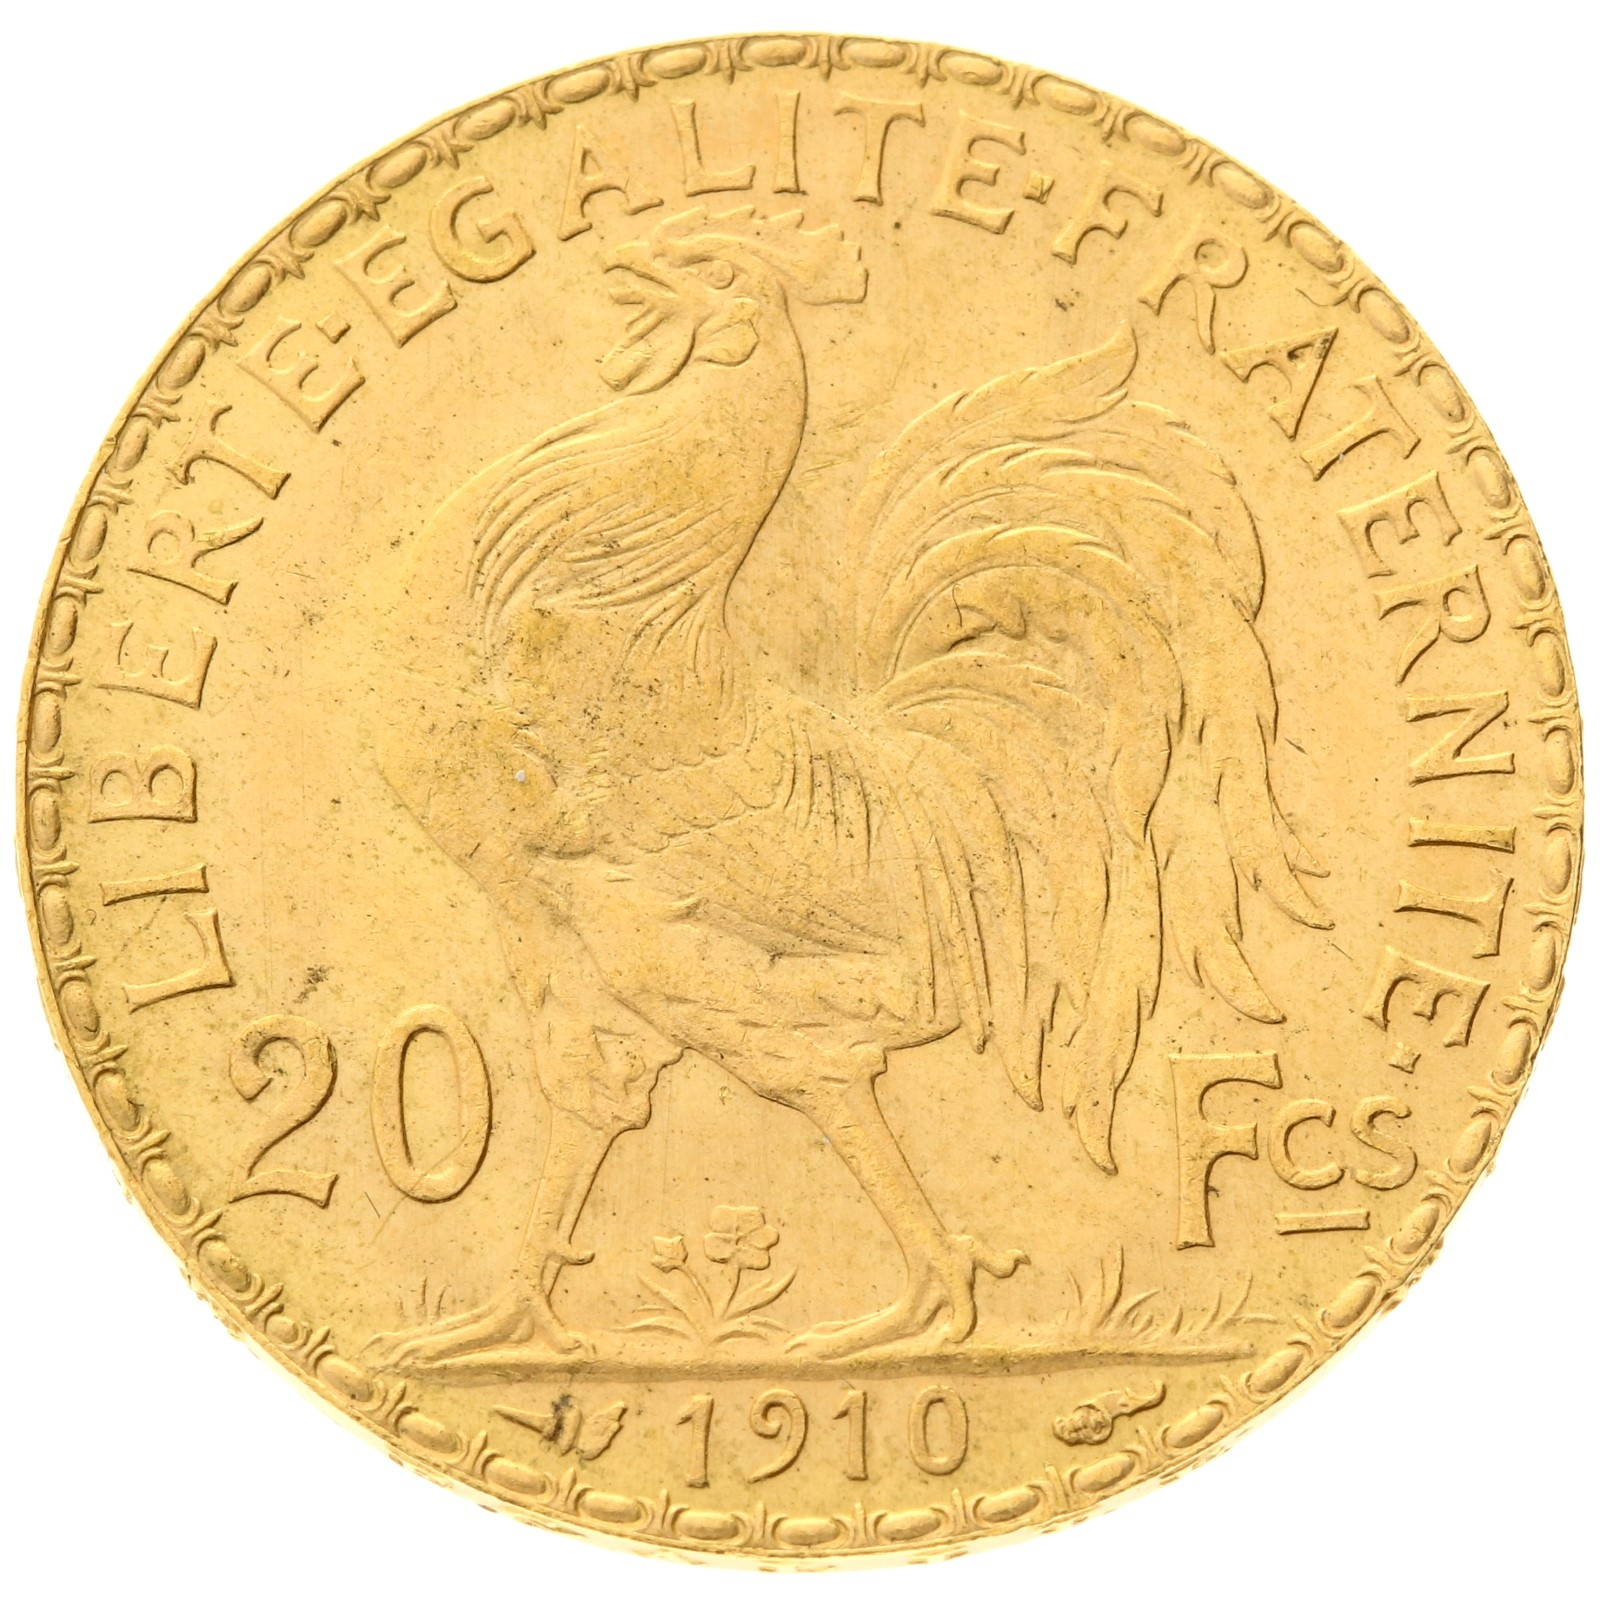 France - 20 francs - 1910